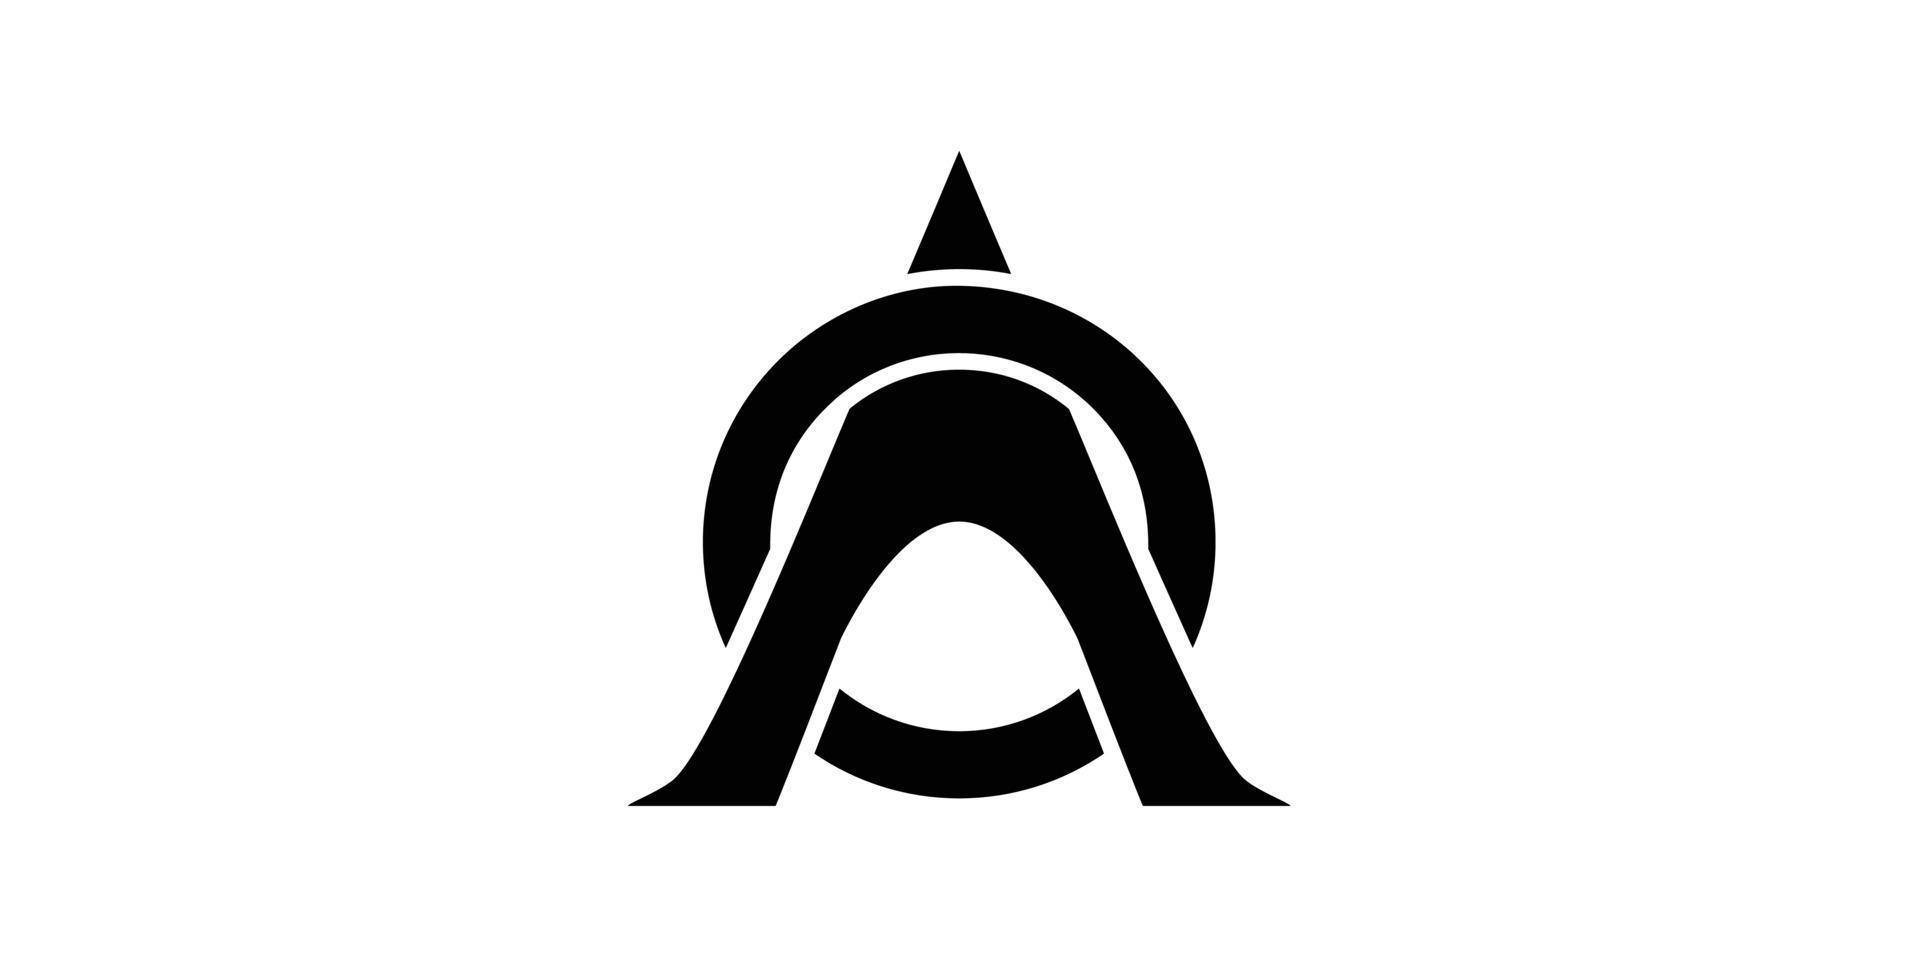 eerste brief oa voor avontuur organisator logo ontwerp vector